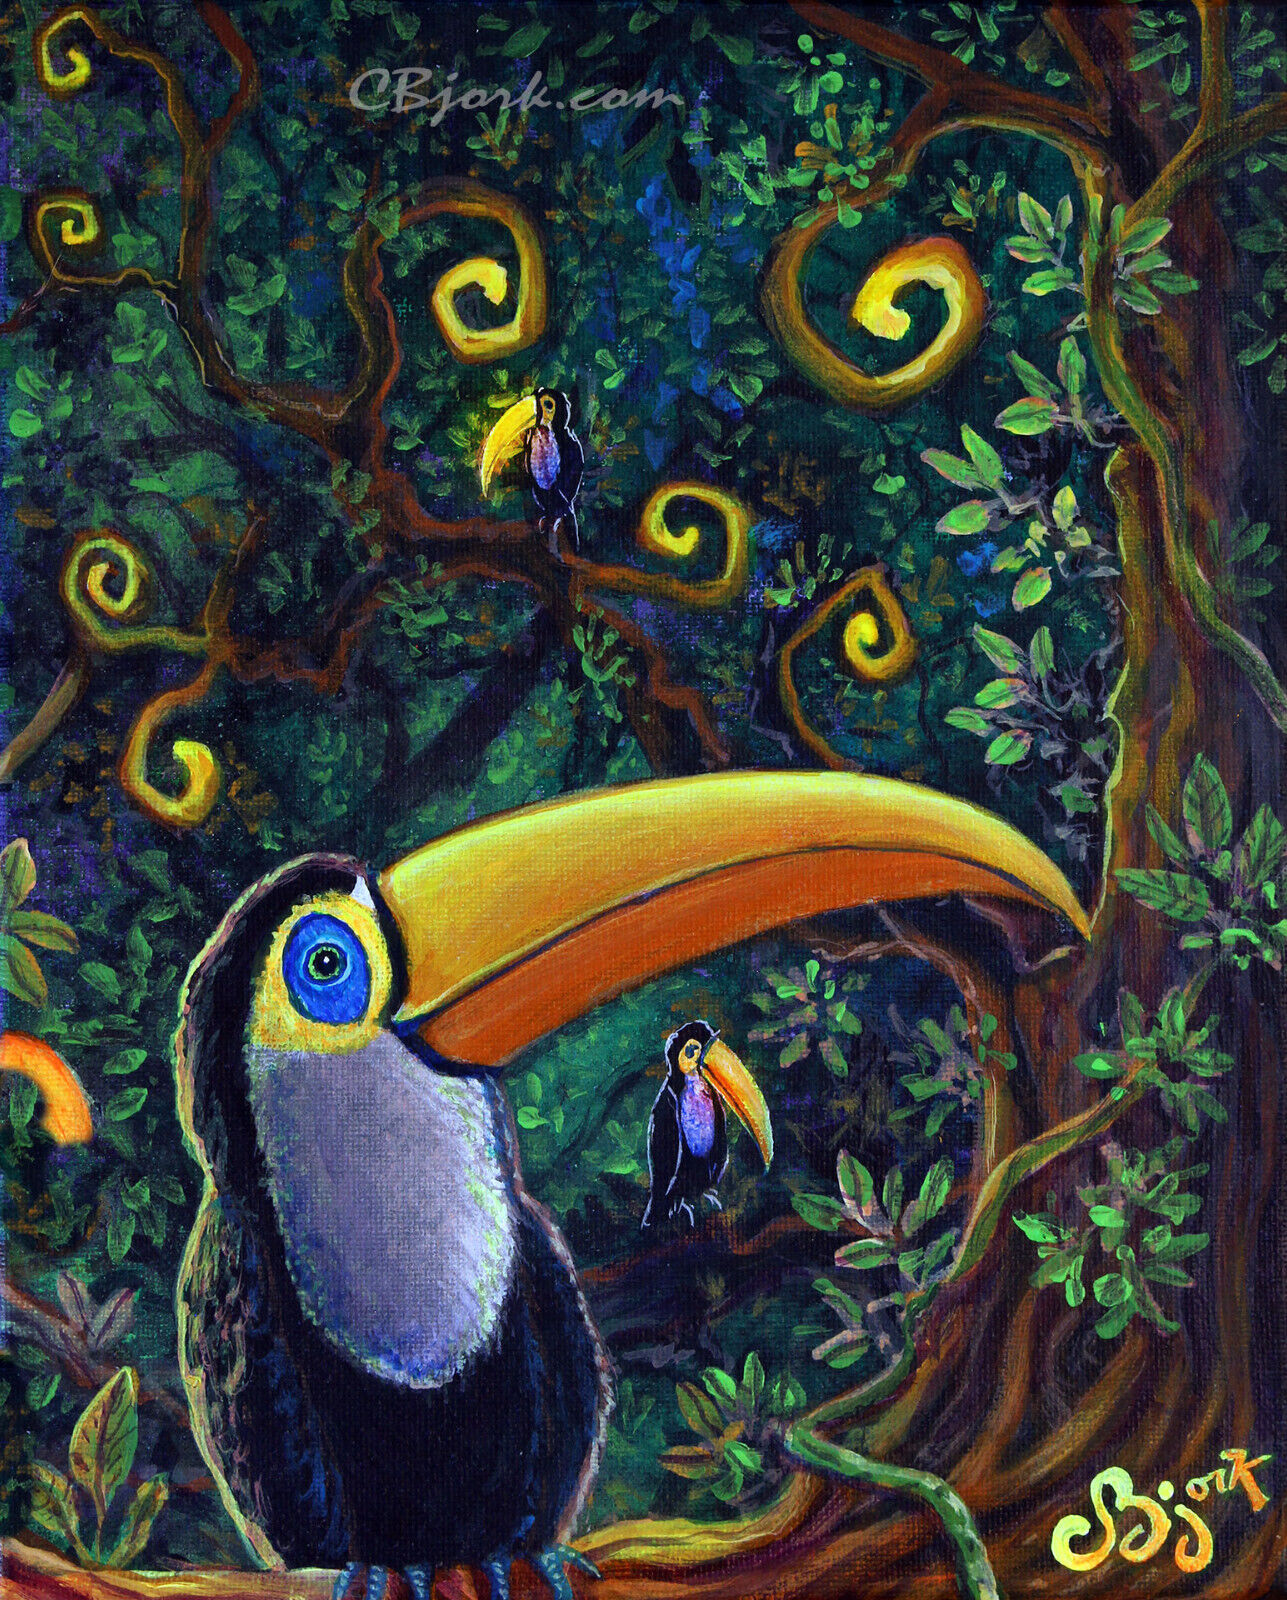 CBjork Original Painting Little Toucan Rainforest Bird Tropical Island Art